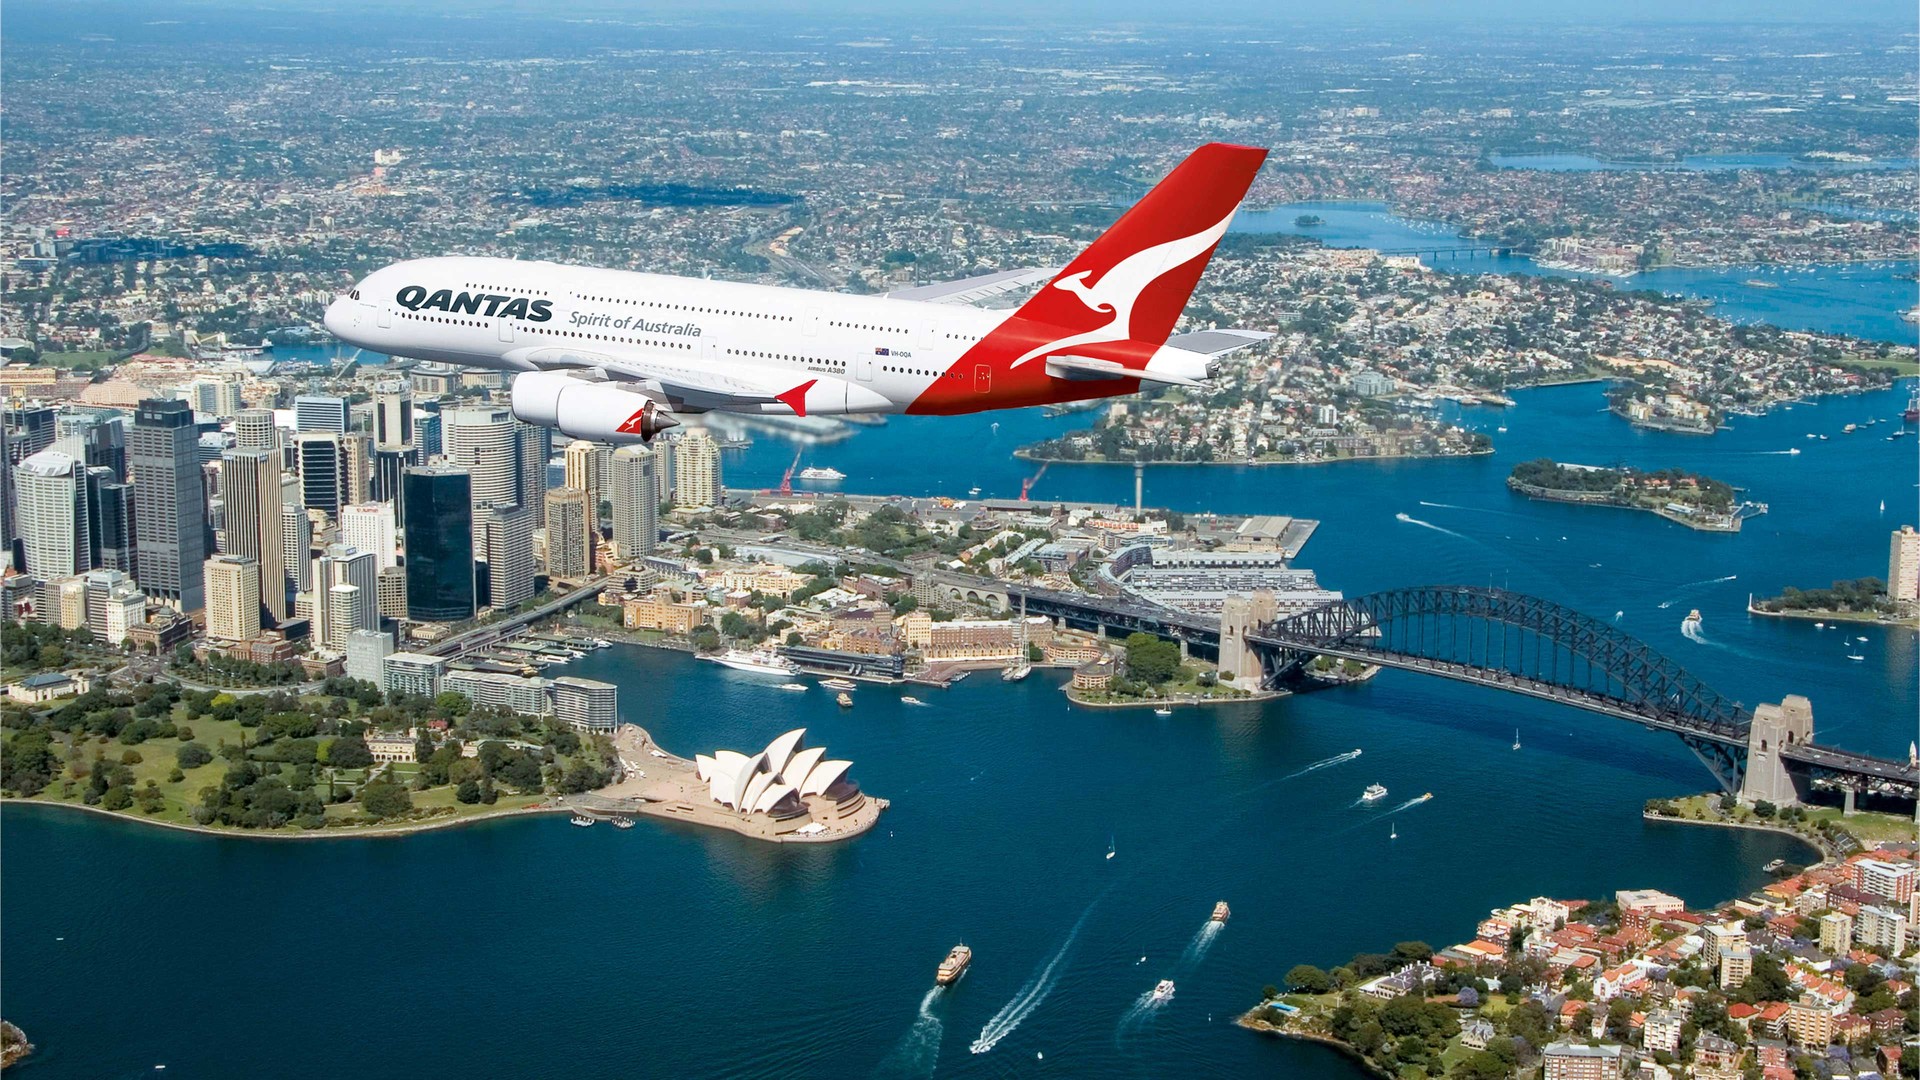 Qantas A380 Marc Newson Ltd